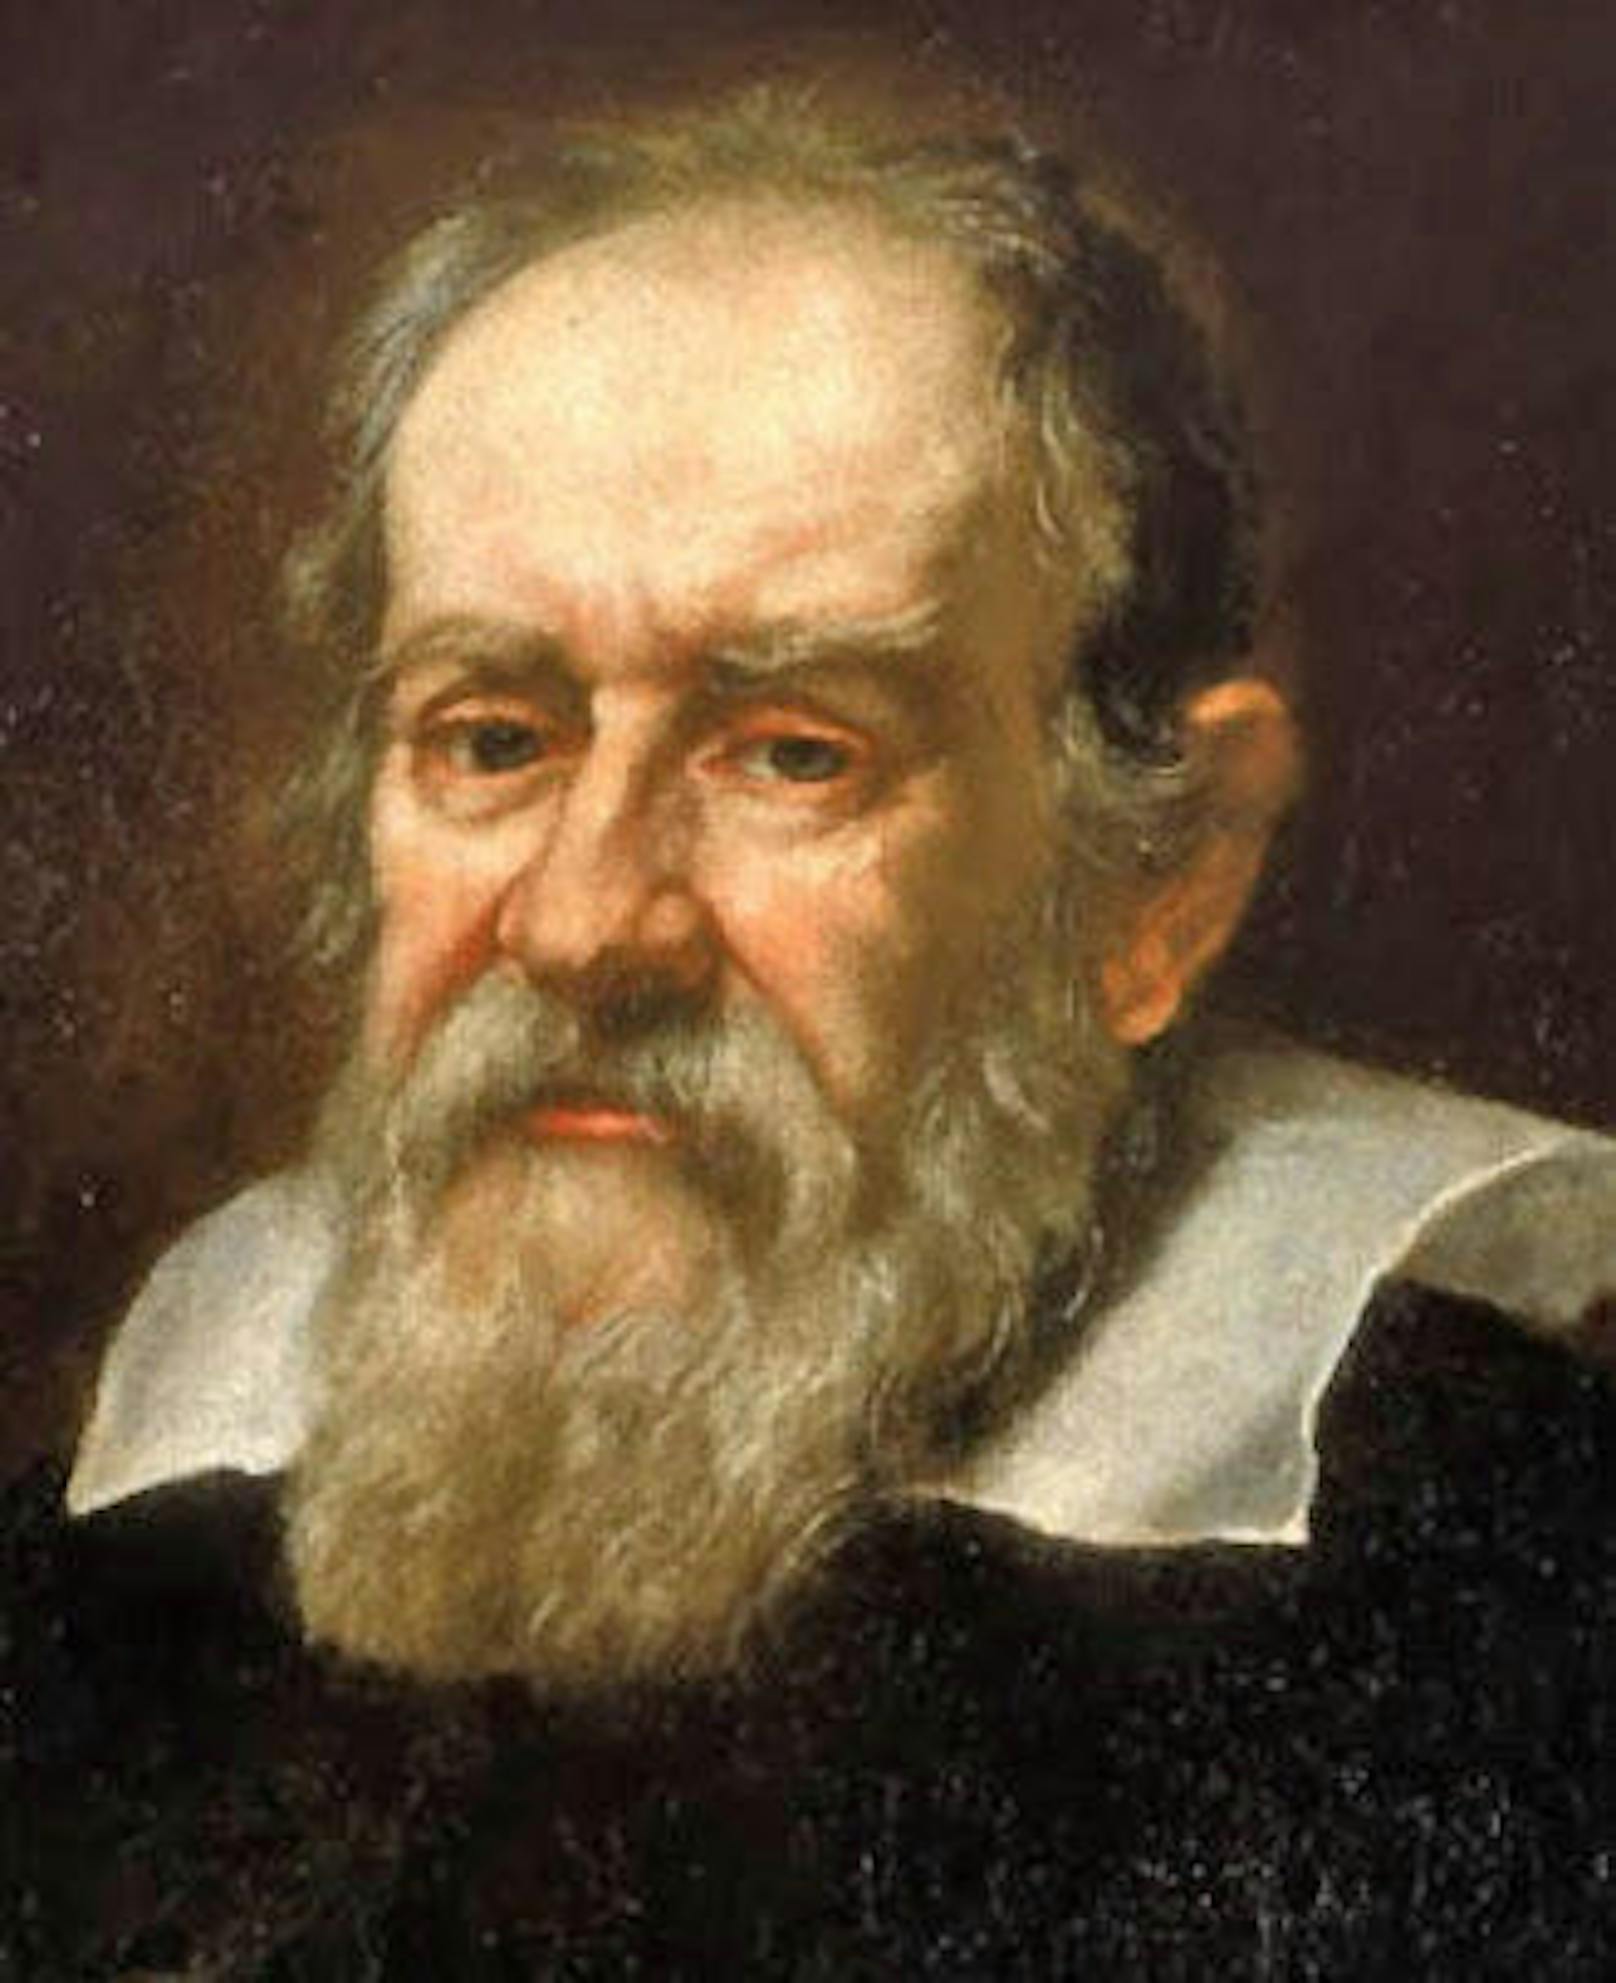 Galileo Galilei (1564-1642)

Mit seinem trotzigen "Und sie bewegt sich doch!", soll Galilei bis zuletzt an seiner Überzeugung, dass die Erde sich drehe festgehalten haben. Und das gegen die Überzeugung der Kirche. Gute Geschichte, aber falsch. 

Stattdessen hat sich Galilei zwar mit der mächtigen Kirche angelegt, jedoch nach langem hin und her nachgegeben. "Ich habe also einen Irrtum begangen, und zwar, wie ich bekenne, aus eitlem Ehrgeiz, reiner Unwissenheit und Unachtsamkeit."